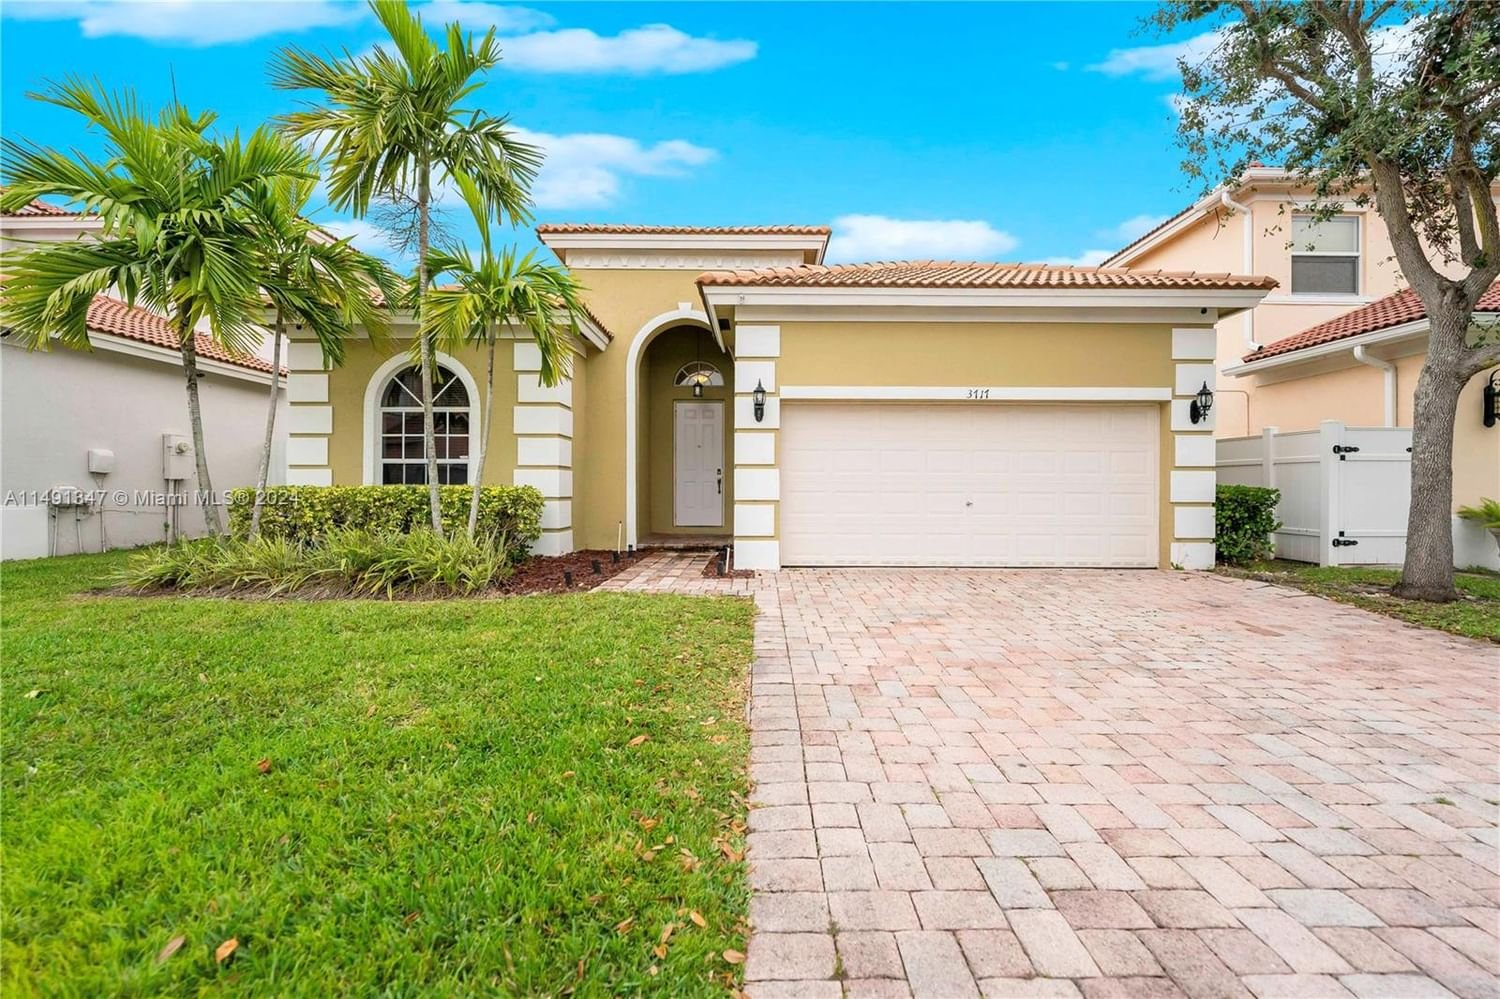 Real estate property located at 3717 13th St, Miami-Dade County, PORTOFINO OAKS, Homestead, FL